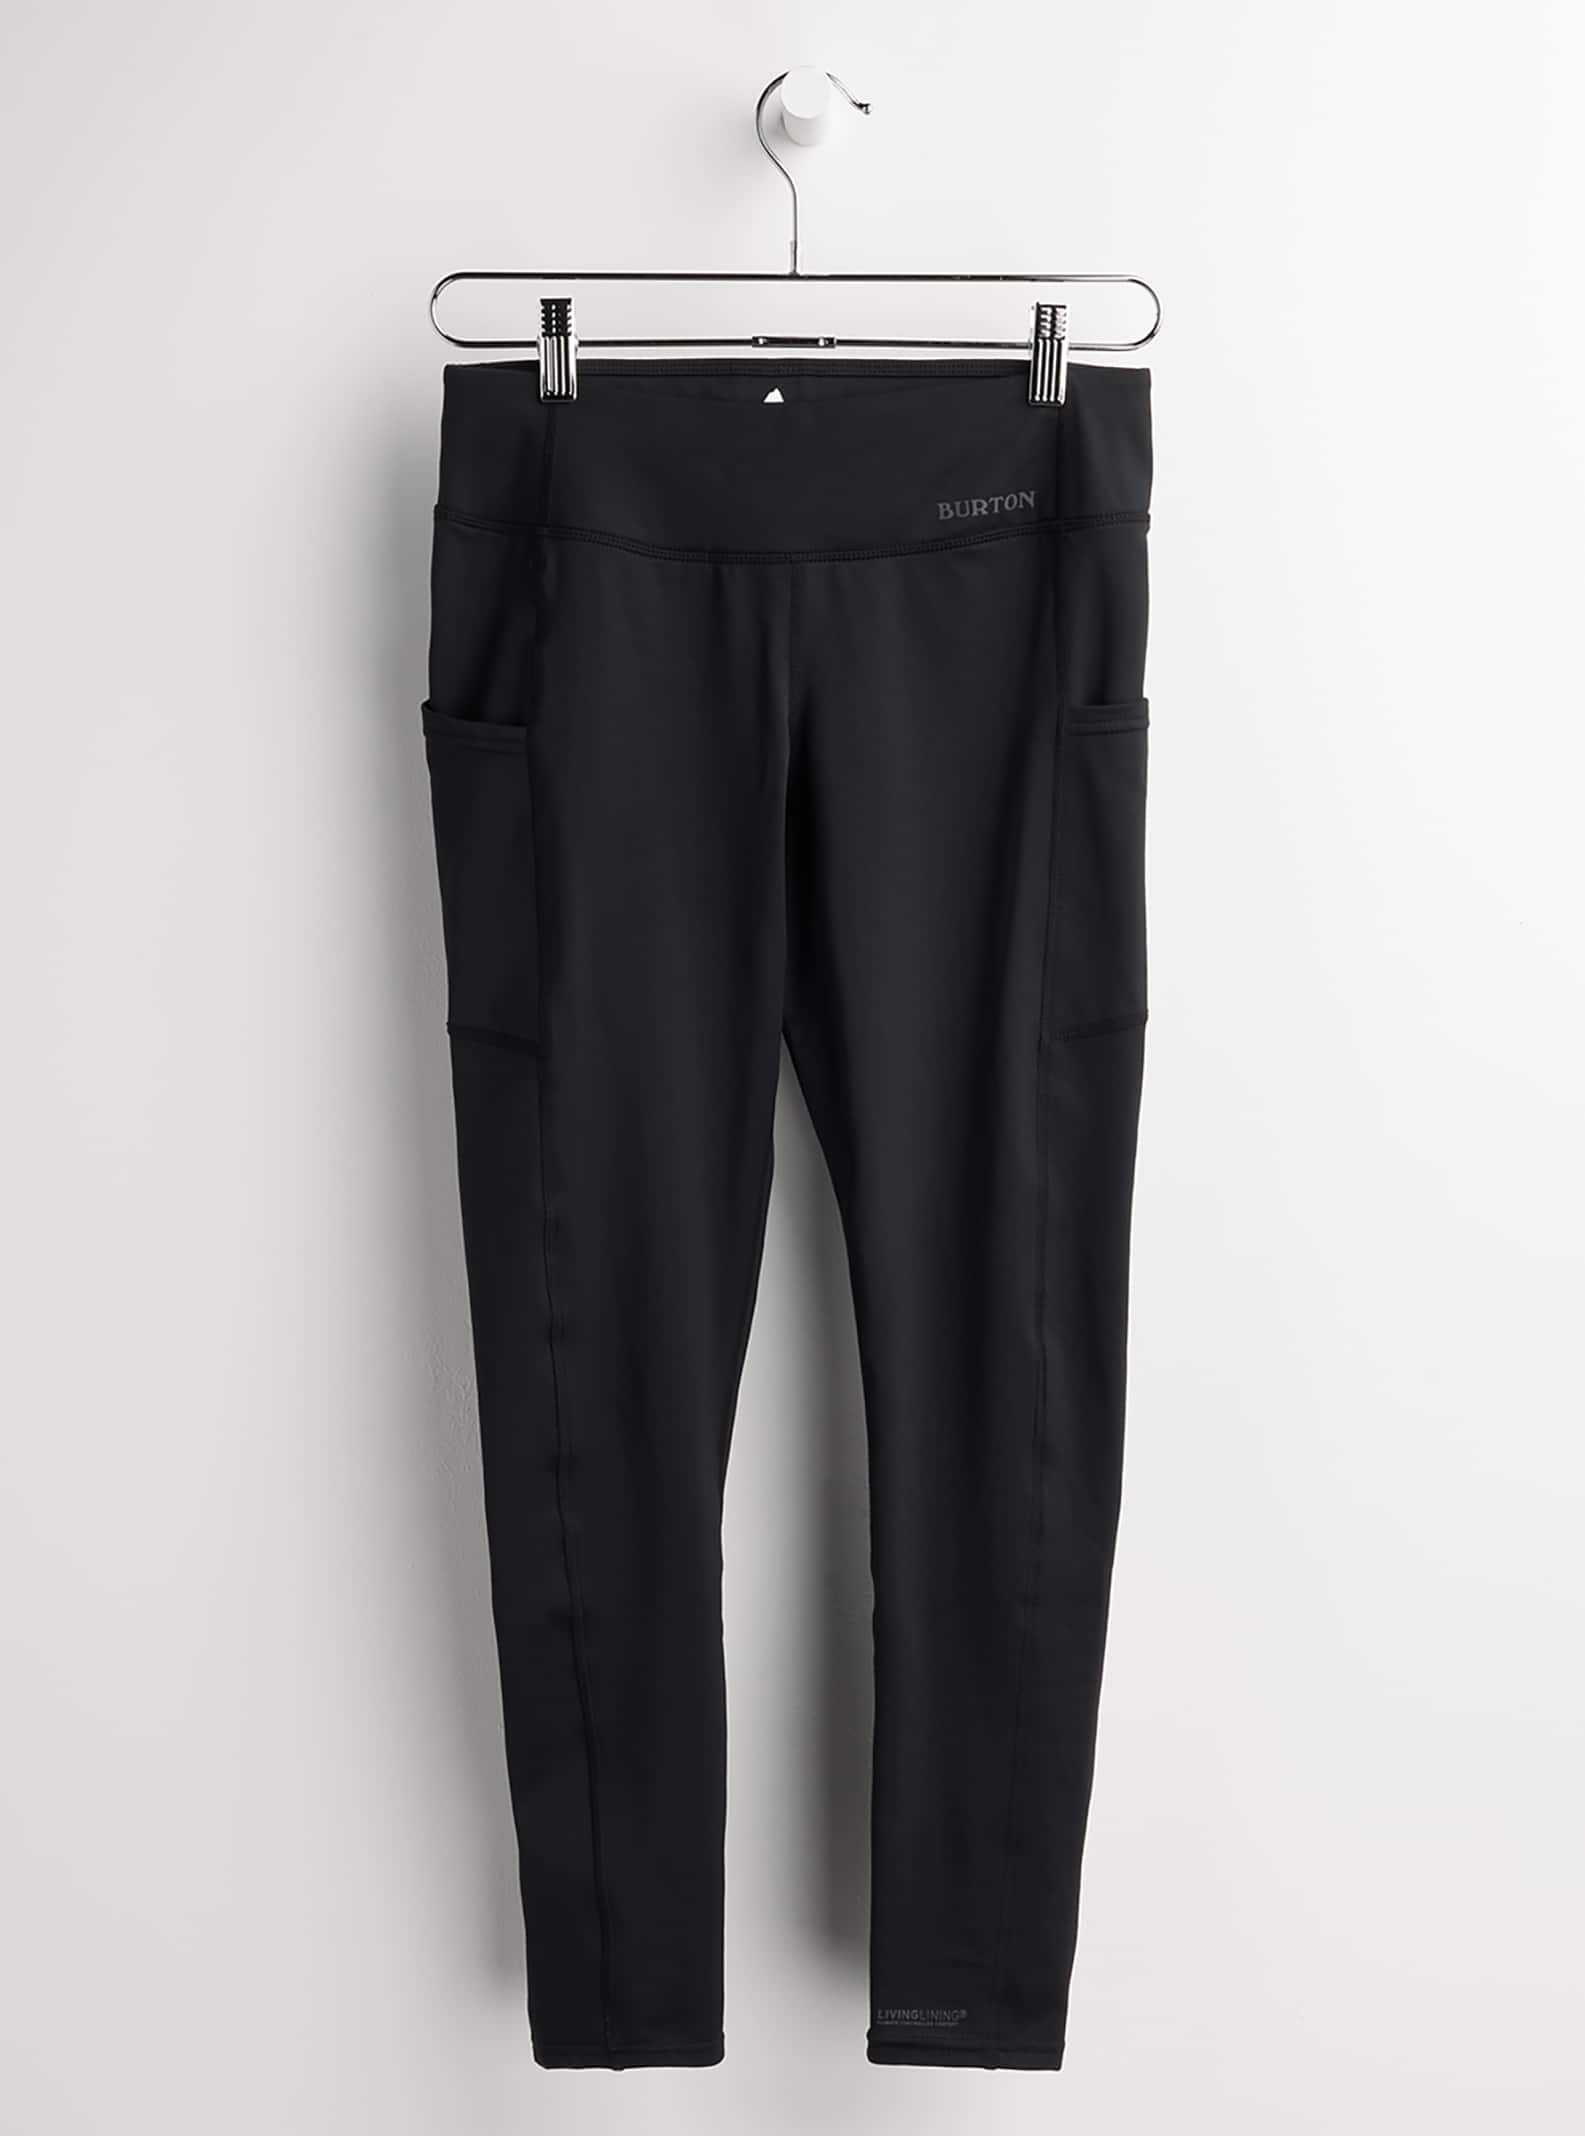 Burton - Pantalon sous-vêtement épais X femme, S